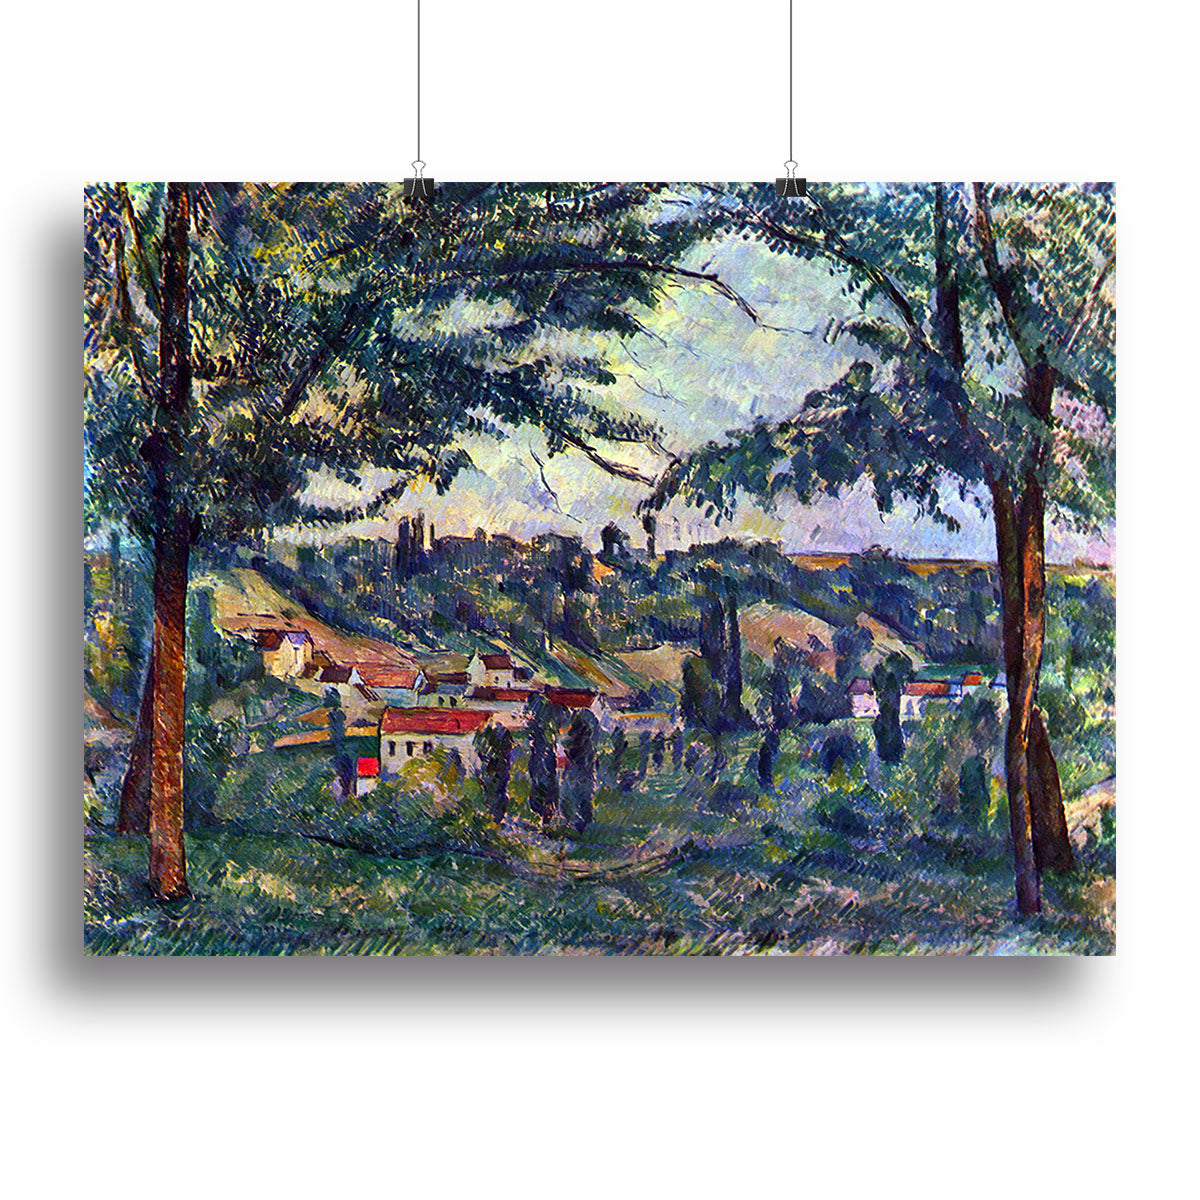 Le Chateau Noir by Cezanne Canvas Print or Poster - Canvas Art Rocks - 2